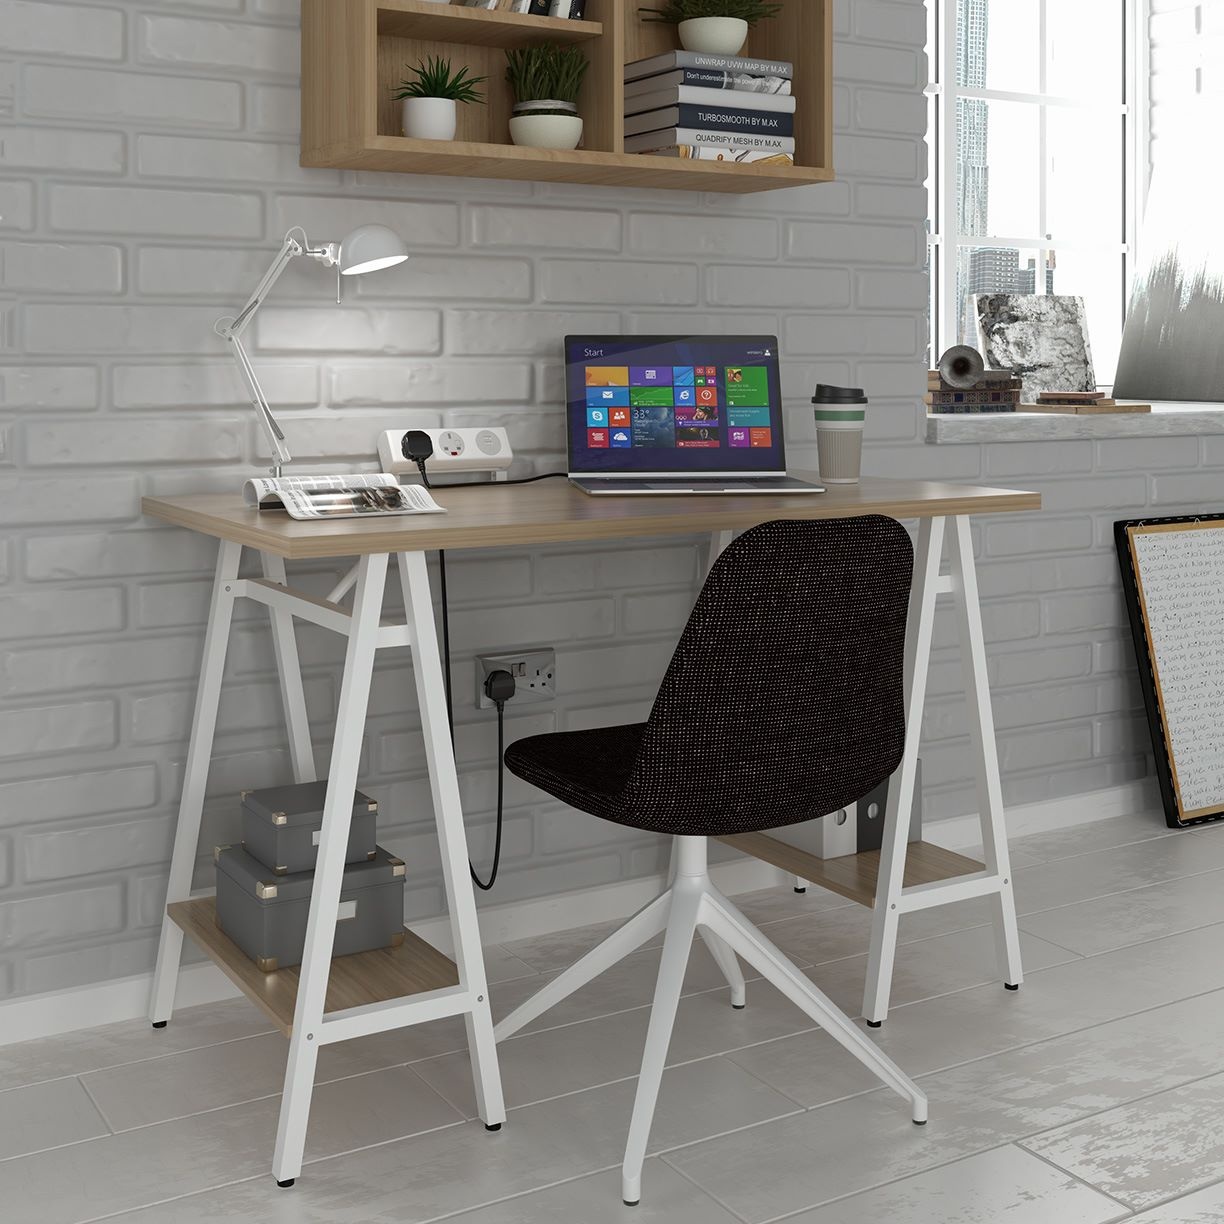 Creatice Trestle Desk for Small Space